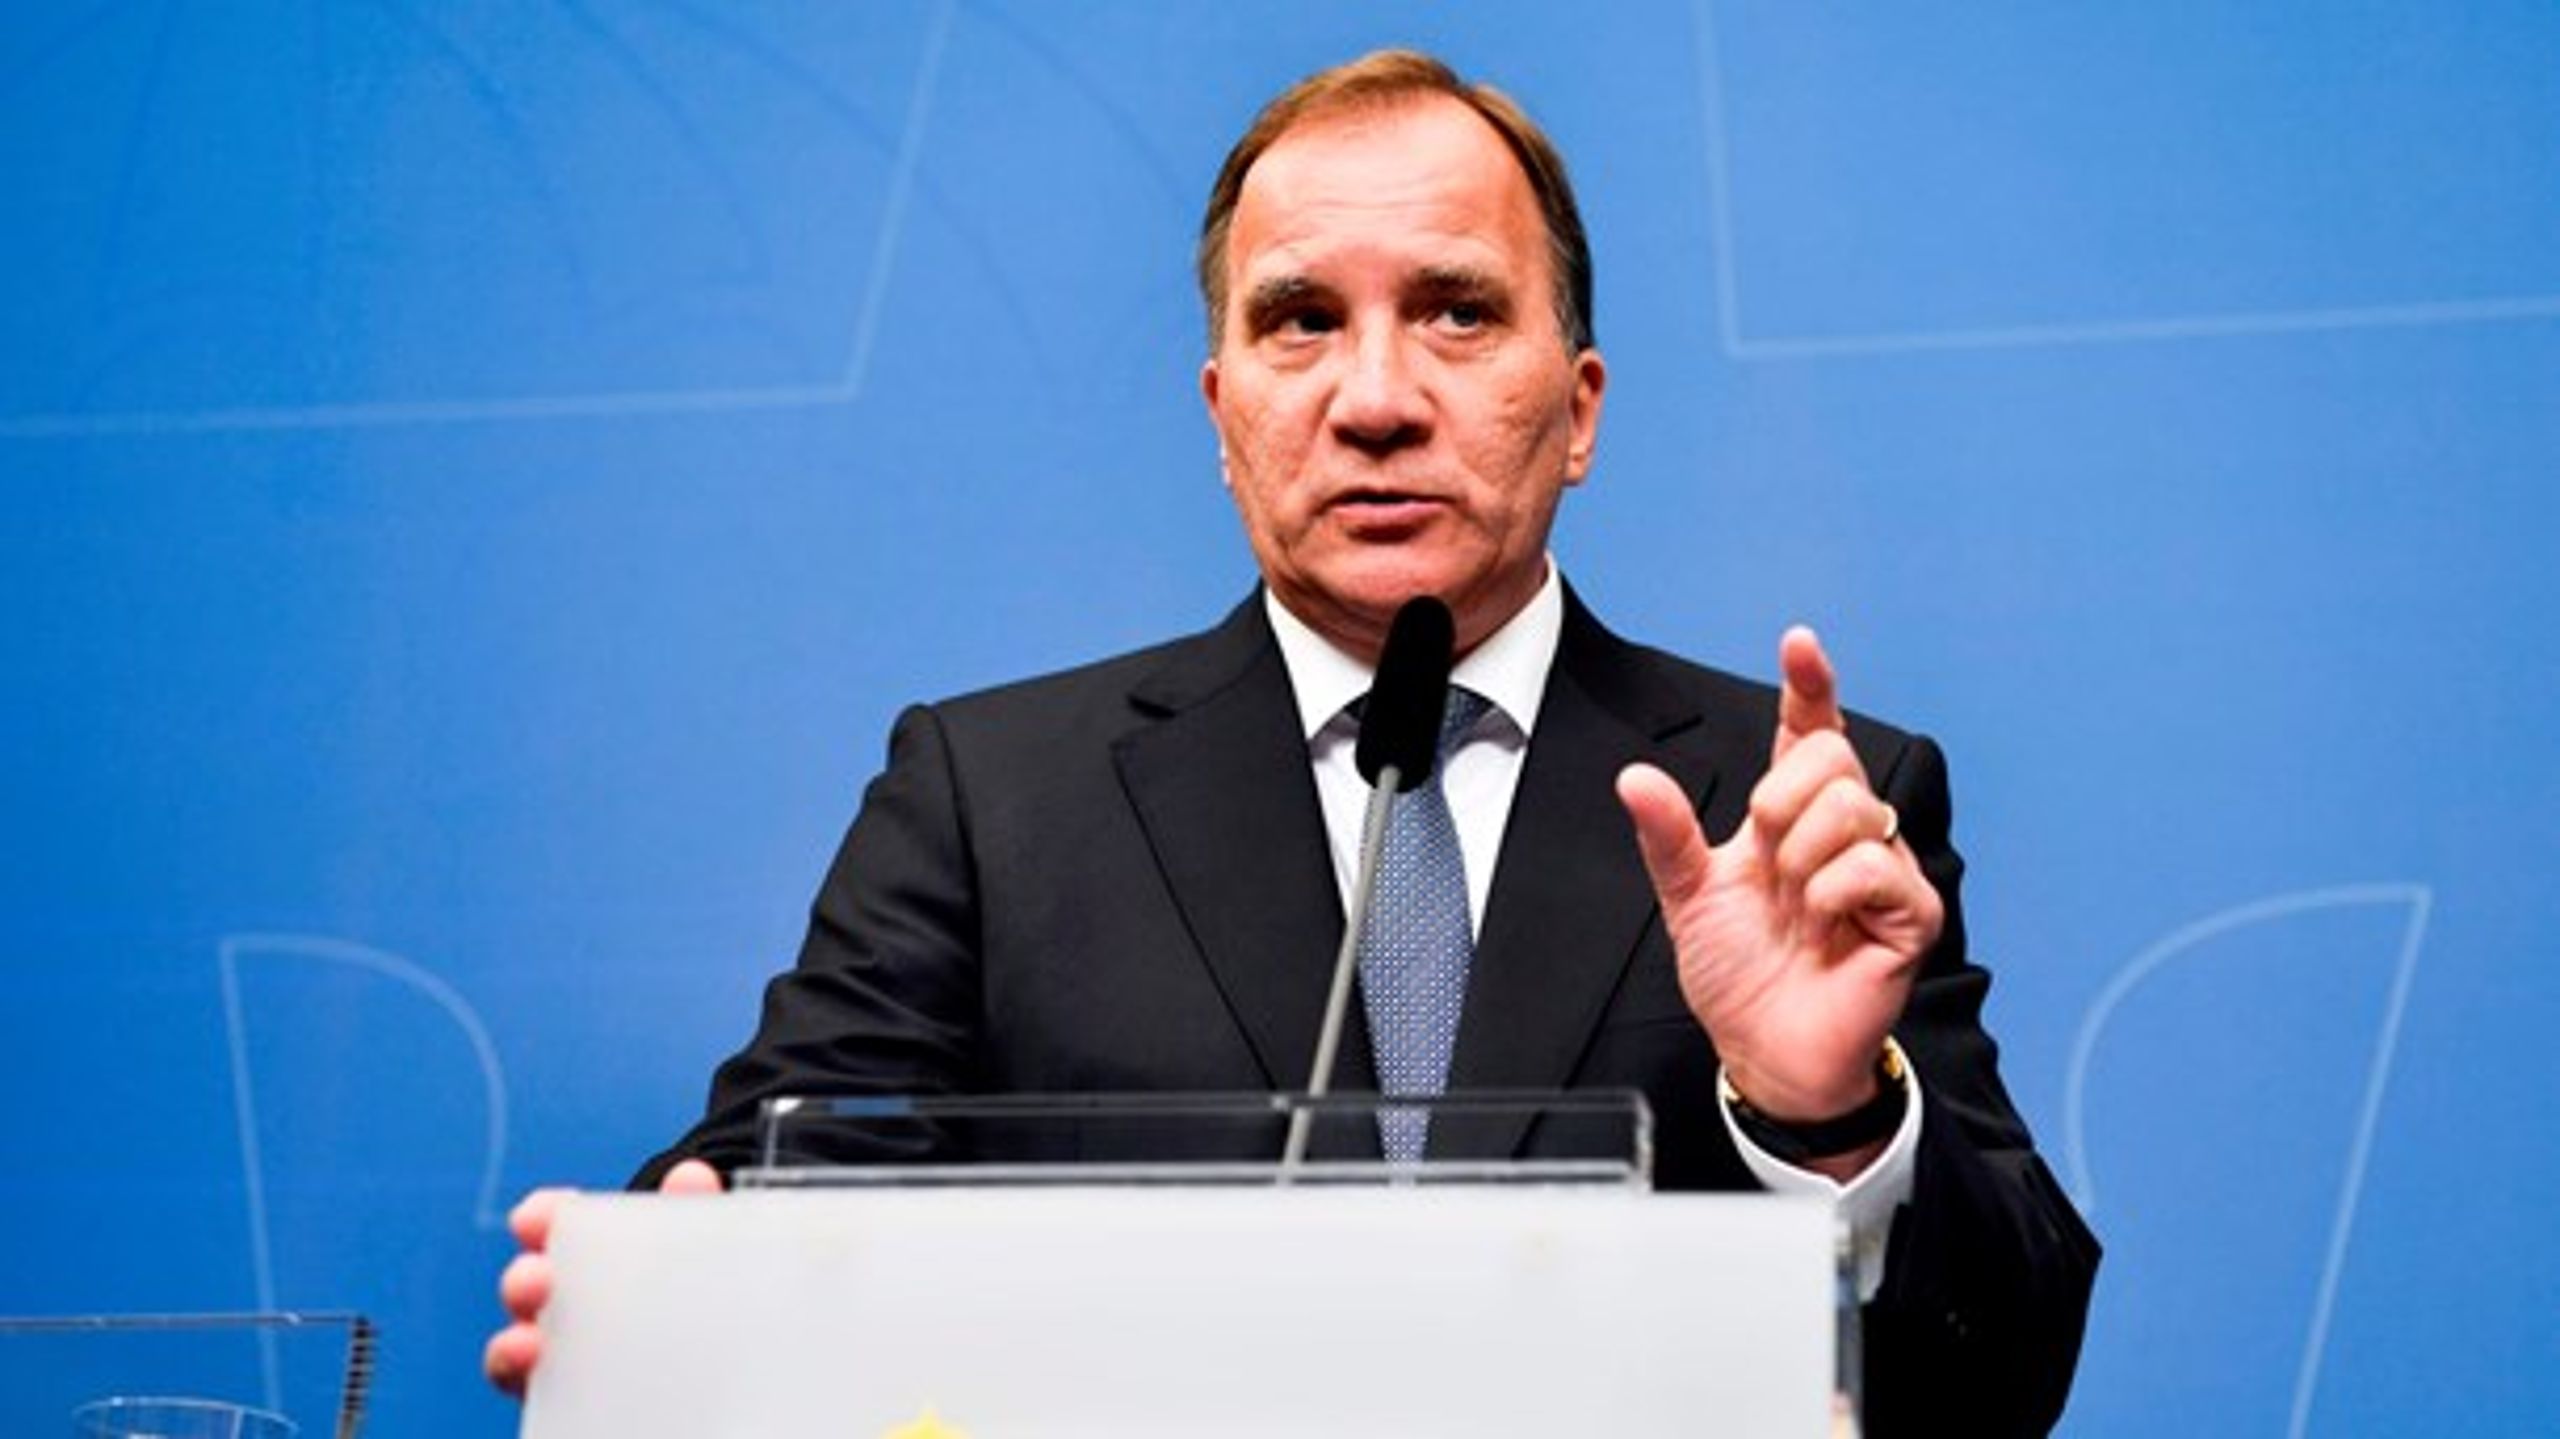 Sveriges statsminister Stefan Löfven holder fortsat fast i, at han bør fortsætte på posten efter søndagens riksdagsvalg.